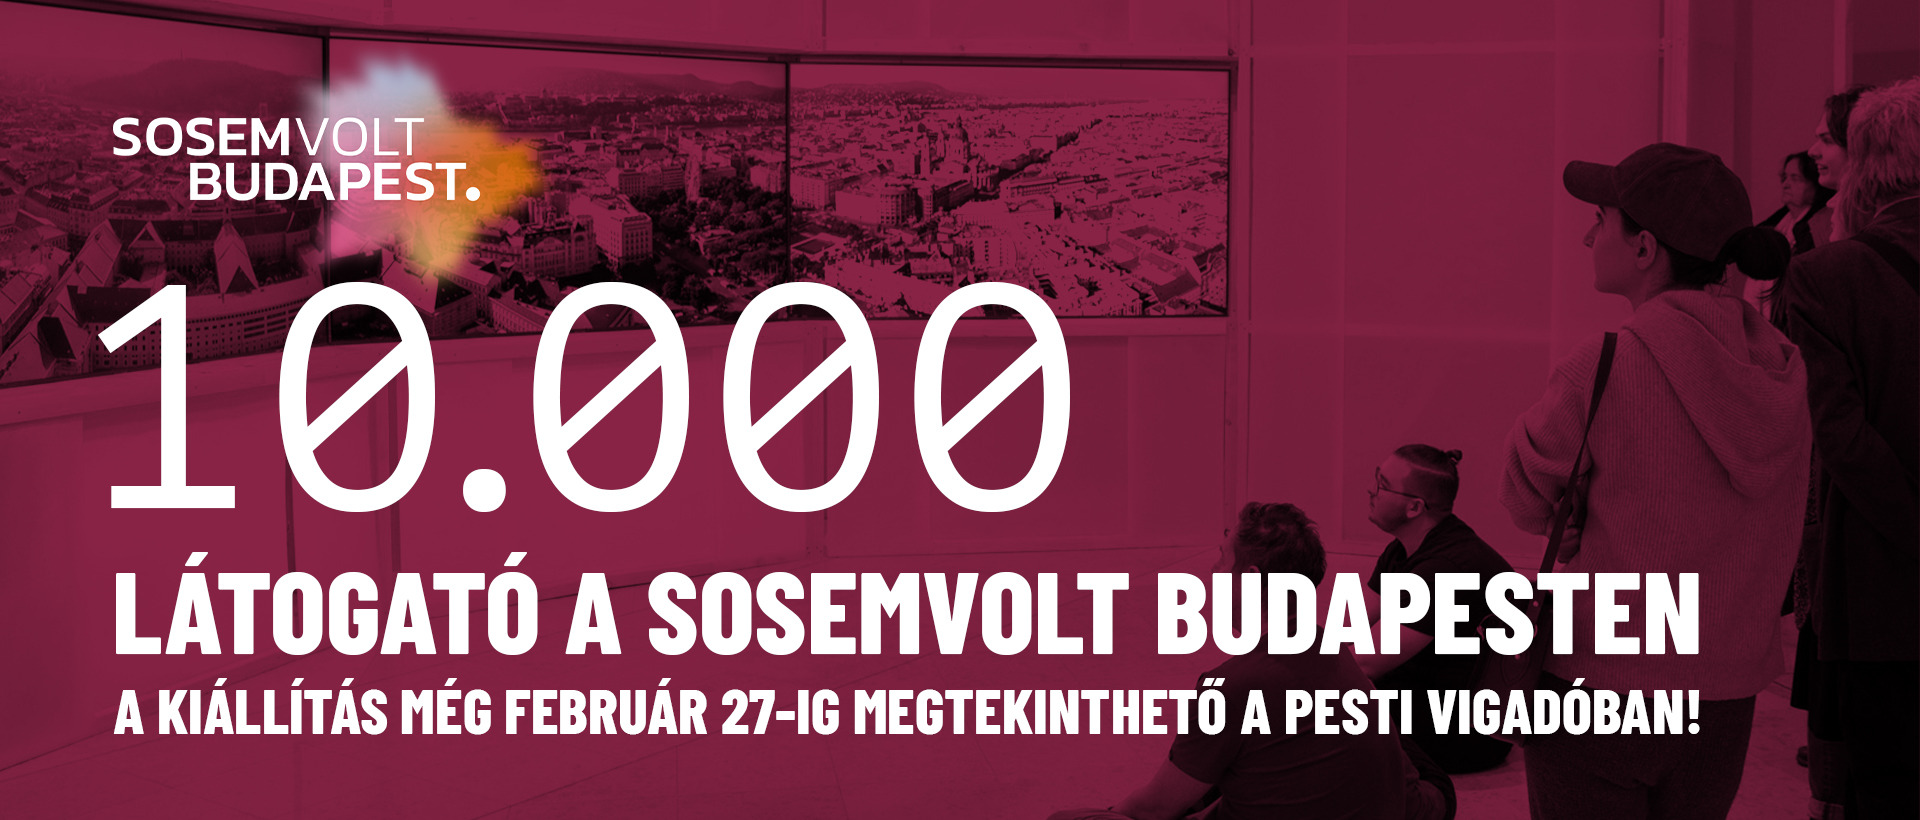 Sosemvolt Budapest – 10.000 látogató